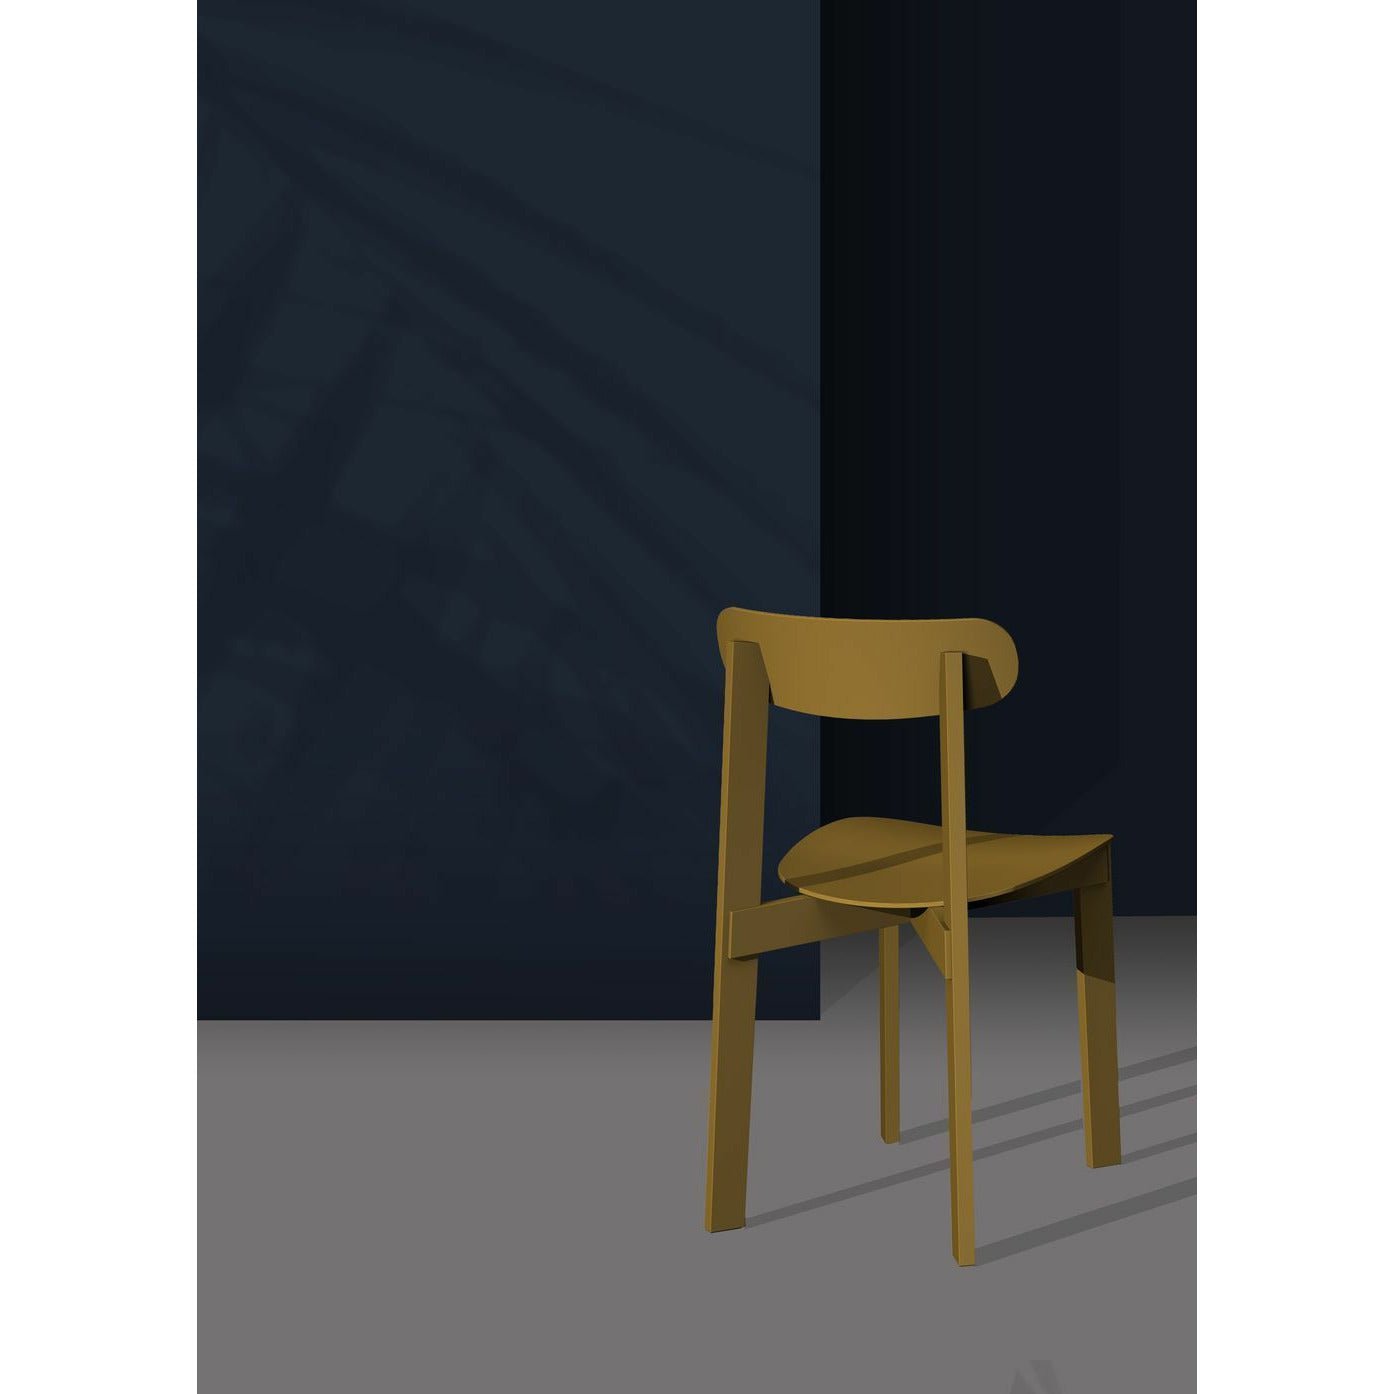 Si prega di aspettare di essere sedia sedia sedia cenere, giallo